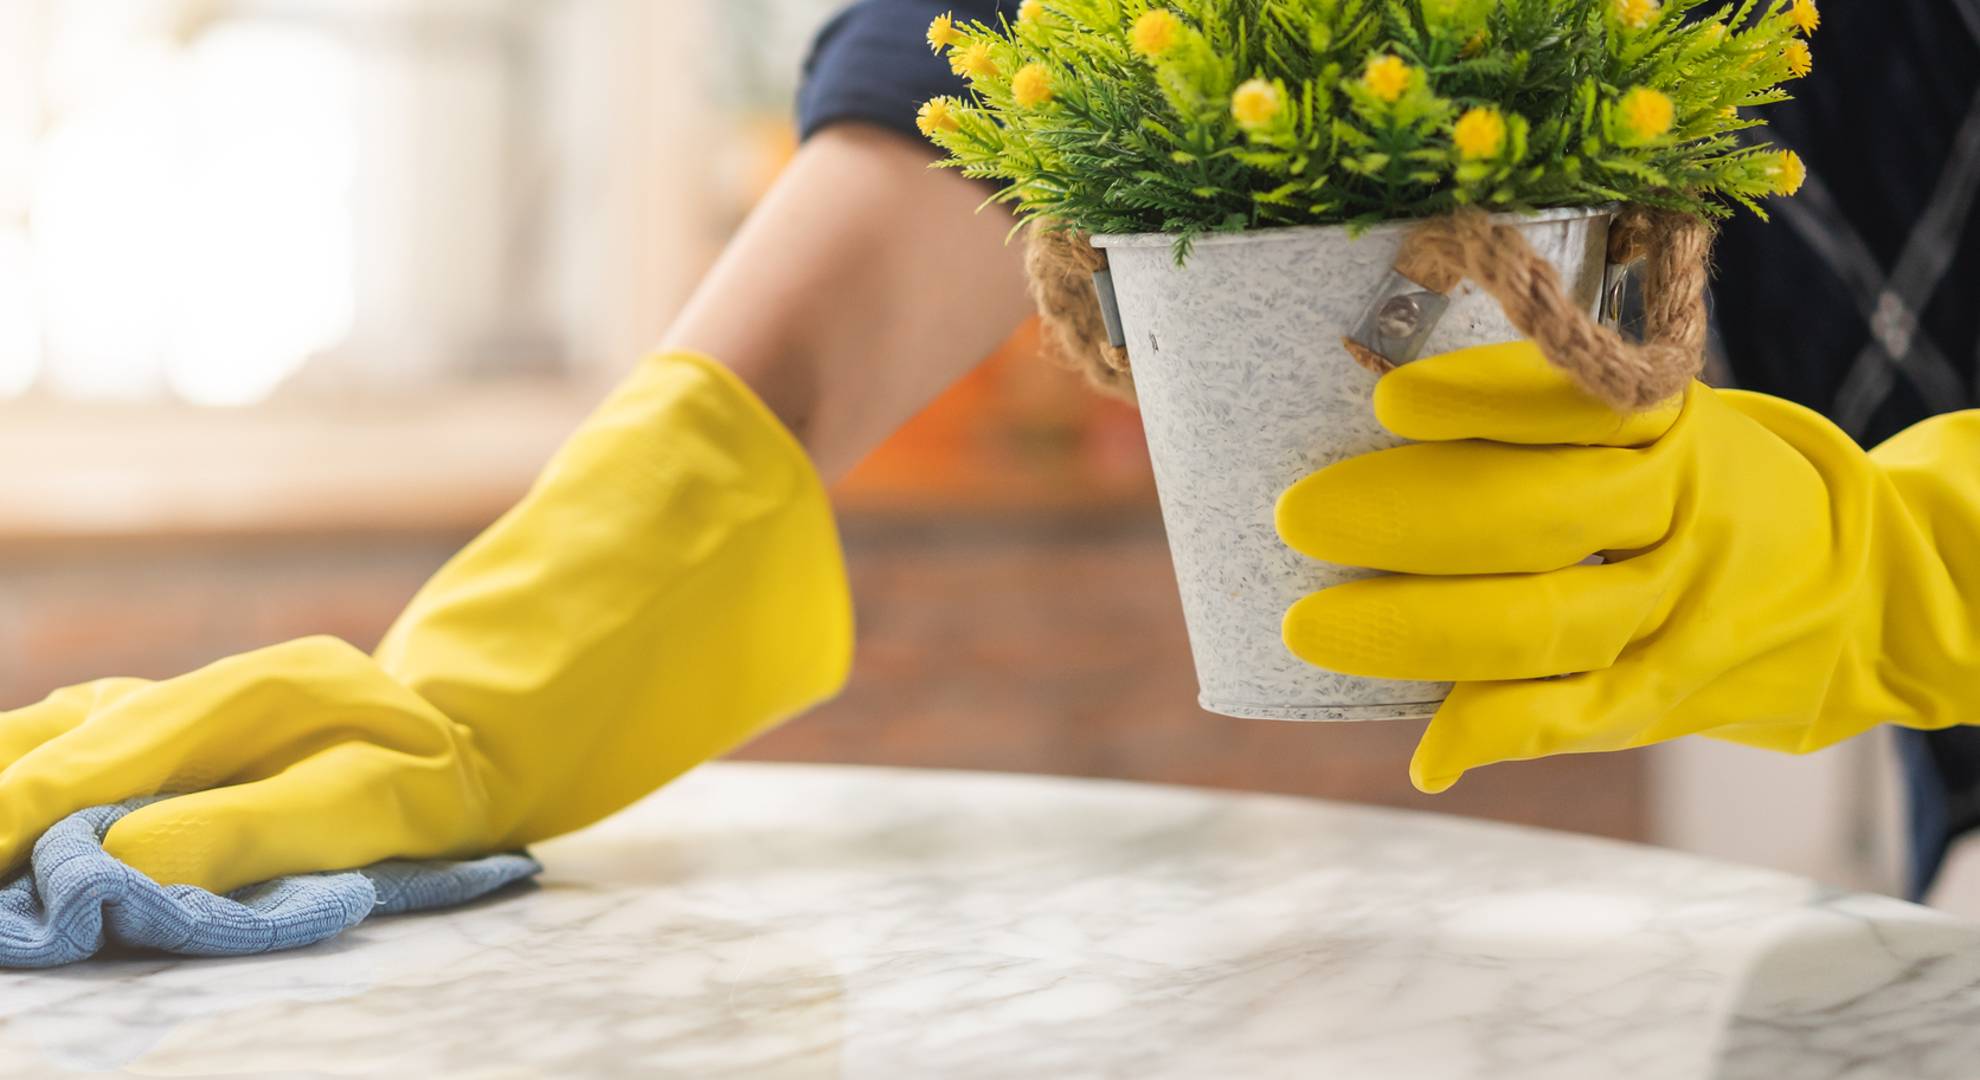 2400-rengoring-hygien-hand-av-hembitrade-servitris-kvinna-bar-gul-skyddande-handskar-medan-rengoring-ta-ut-blomkruka-fran-tabell-och-anvander-sig-av-bla-trasa-avtorkning-till-damm-h